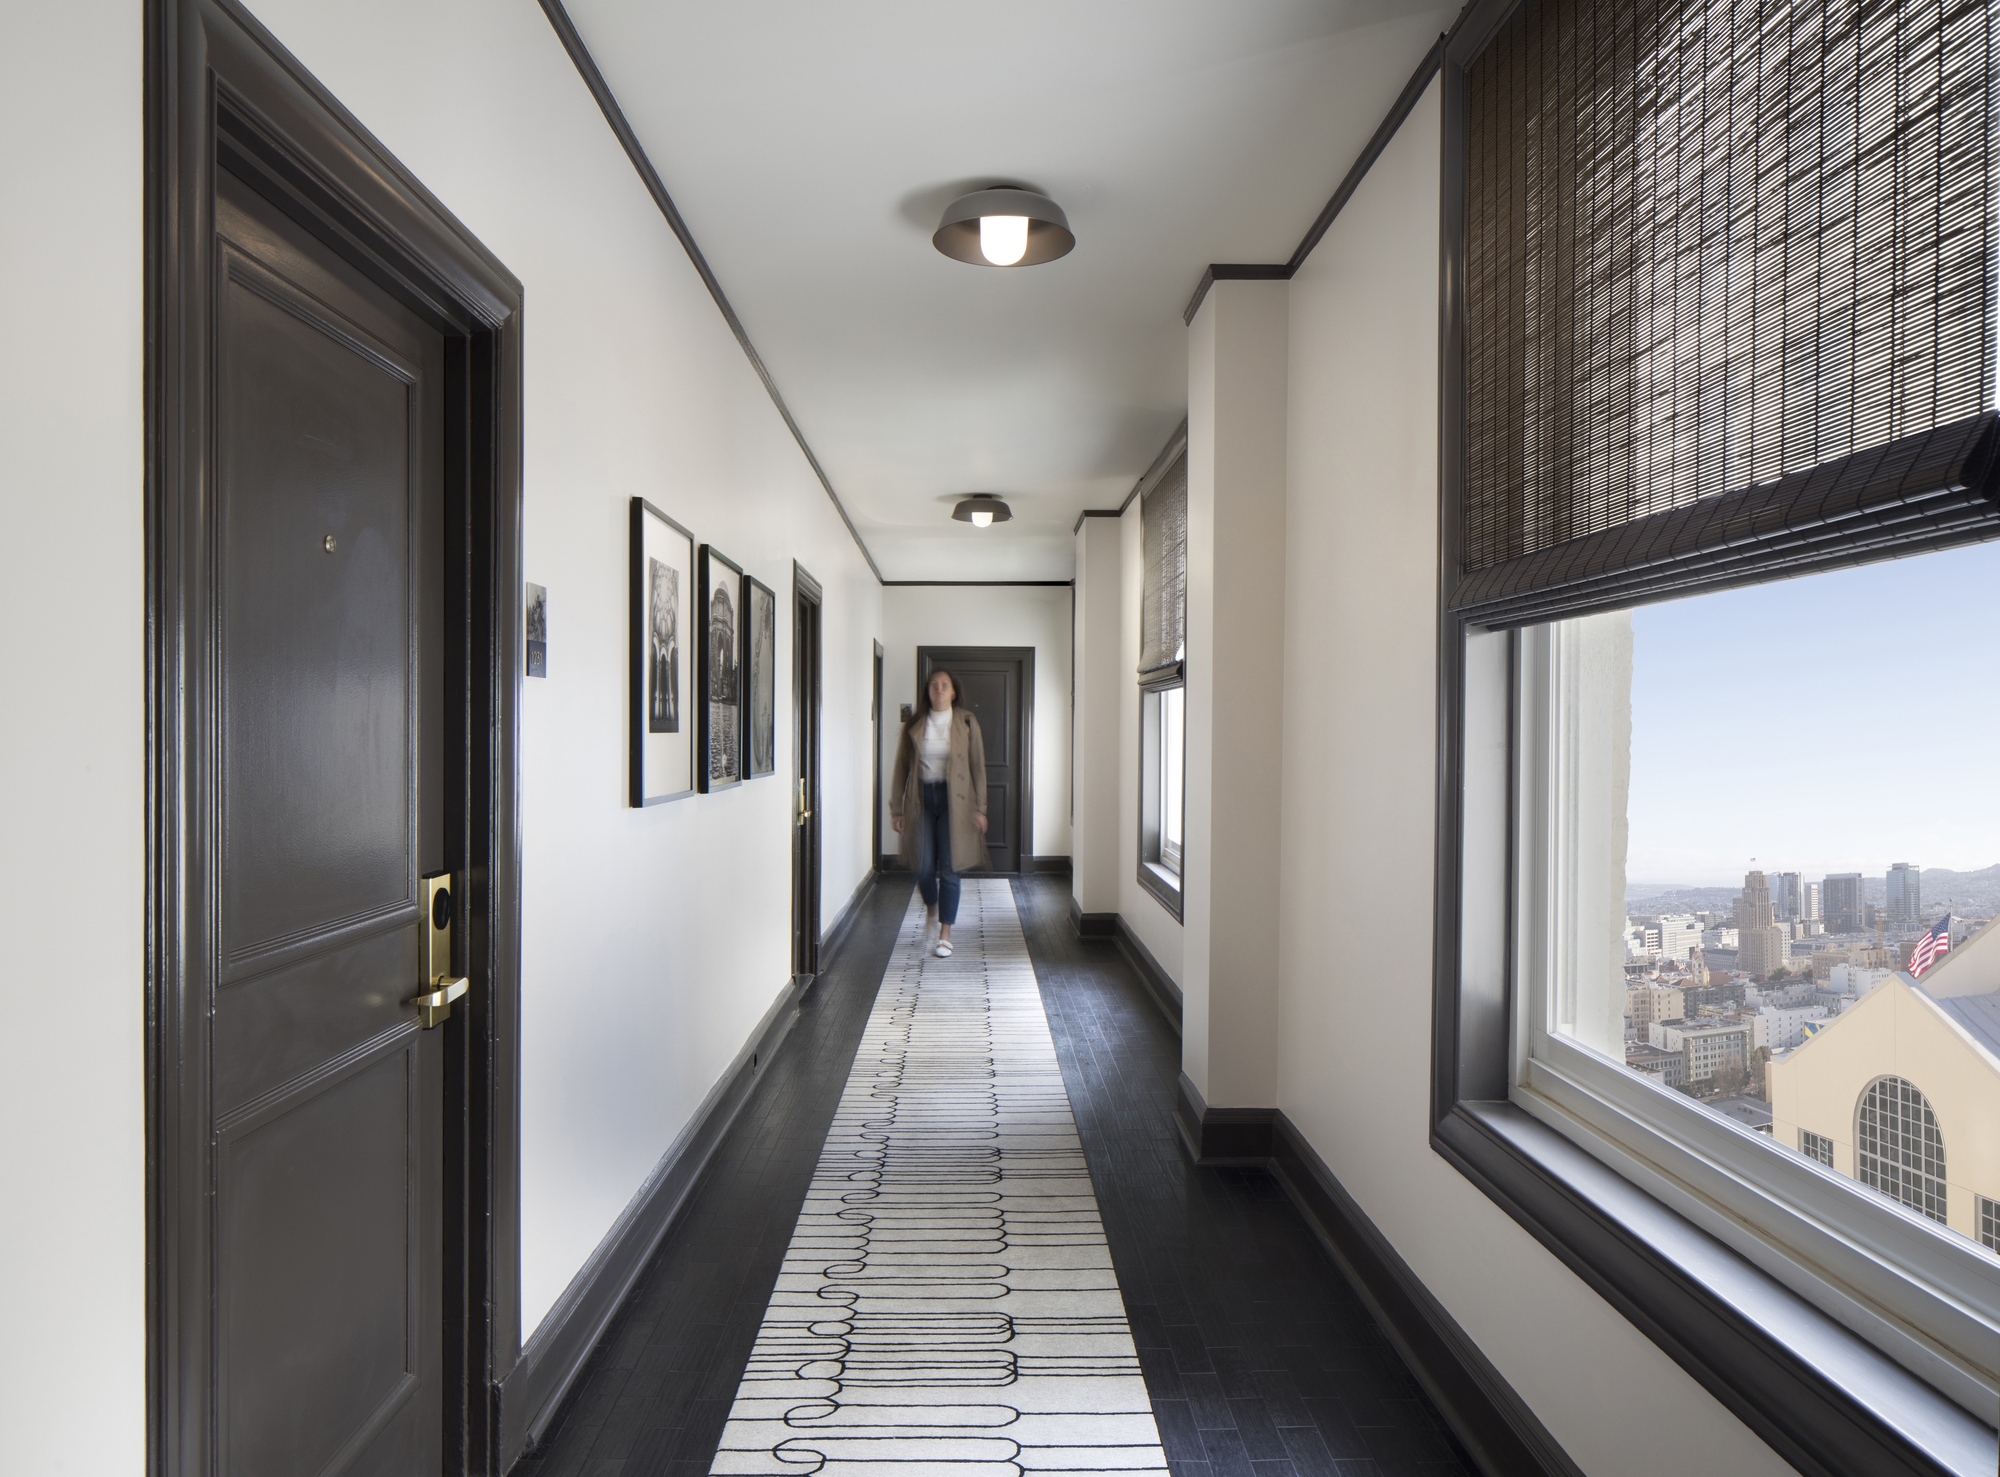 图片[10]|克利夫特皇家索尼斯塔酒店|ART-Arrakis | 建筑室内设计的创新与灵感